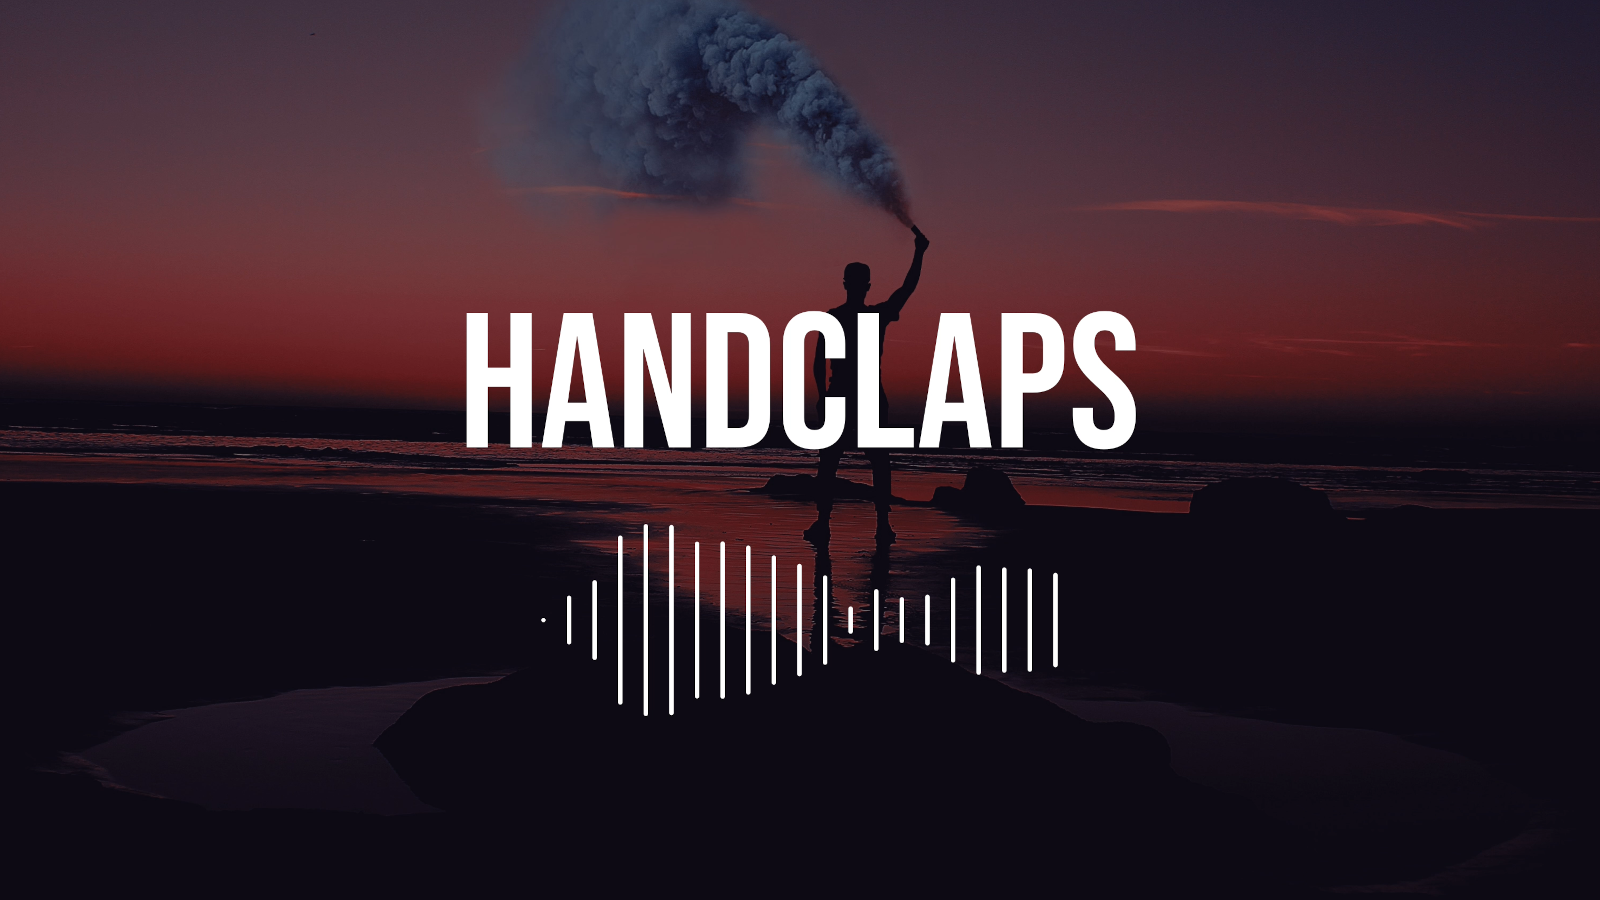 Handclaps 1.3.0: Visualizer improvements